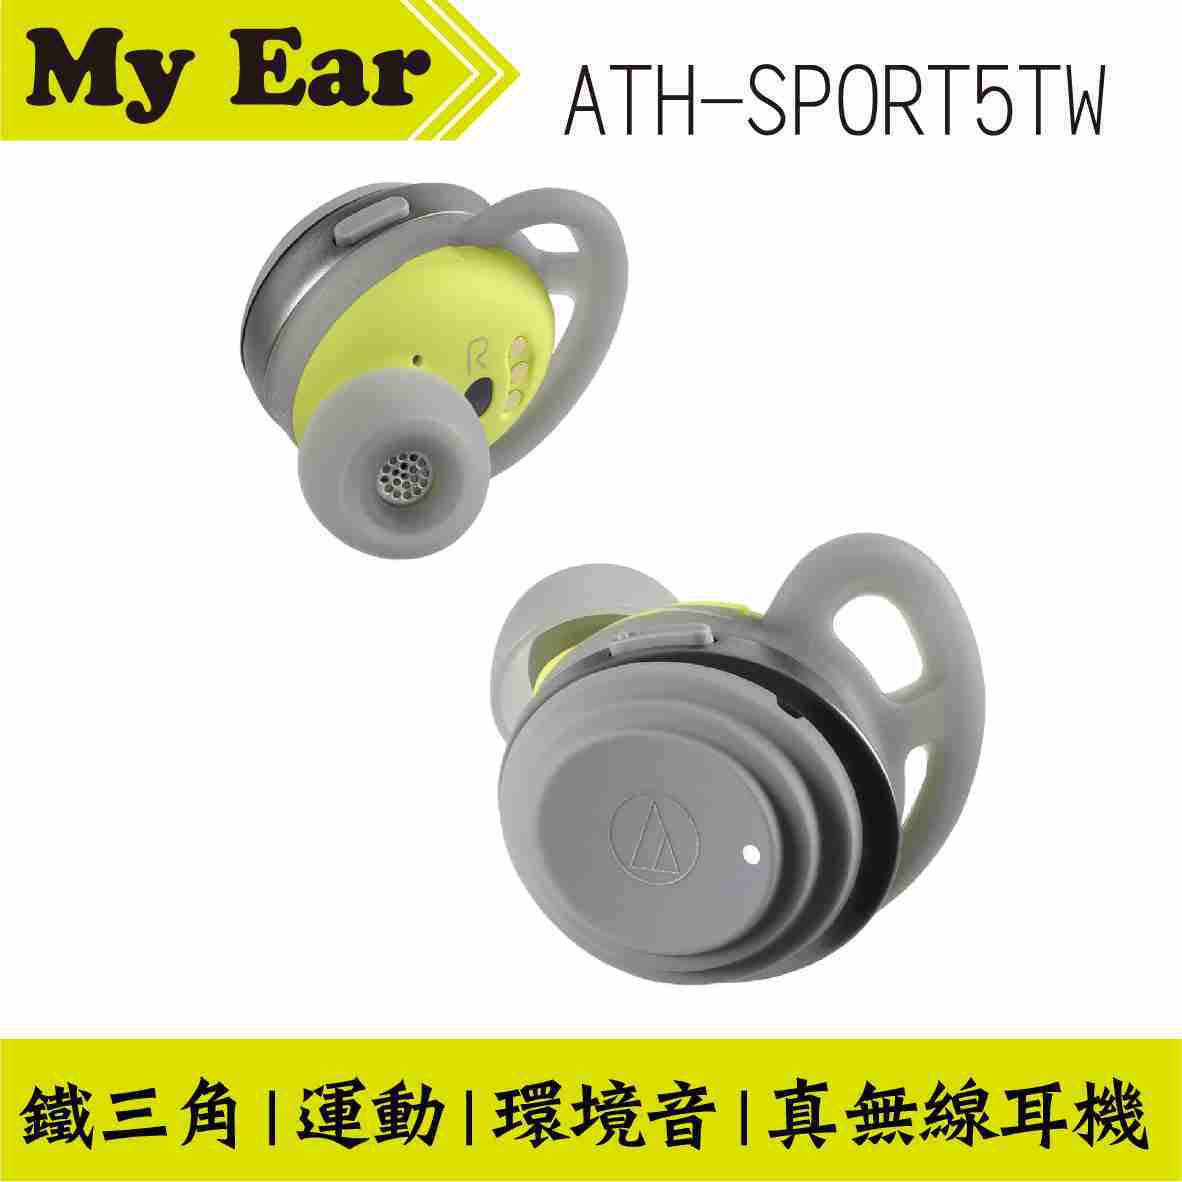 鐵三角 ATH-SPORT5TW 新款 真無線 耳機 無線 藍芽耳機 運動耳機 | My Ear 耳機專門店